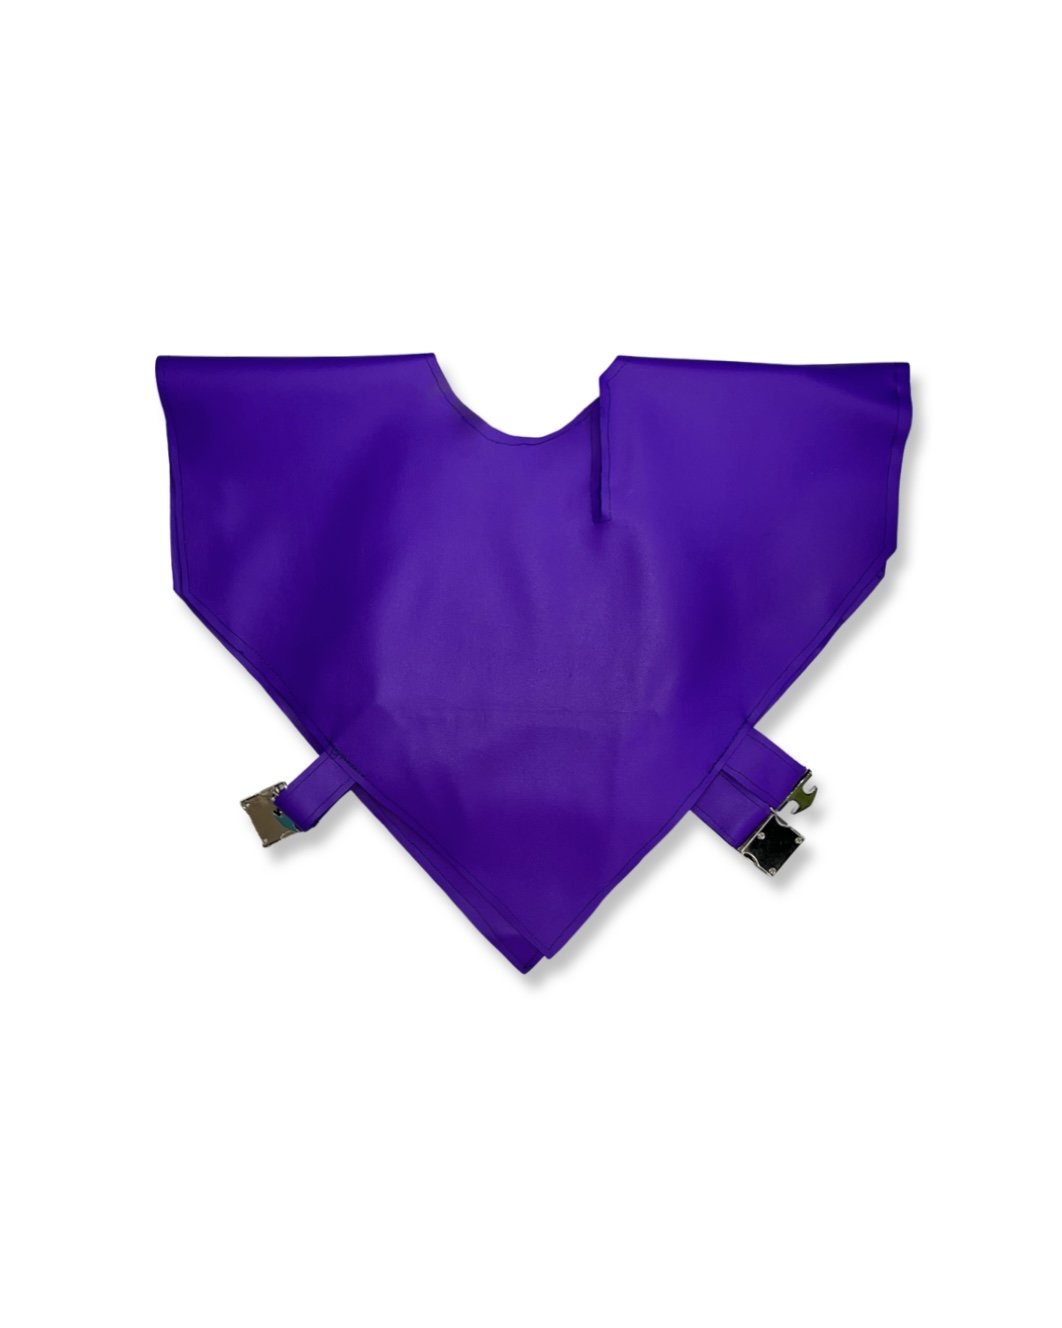 Uniform Double Triangle Top in Bright Purple